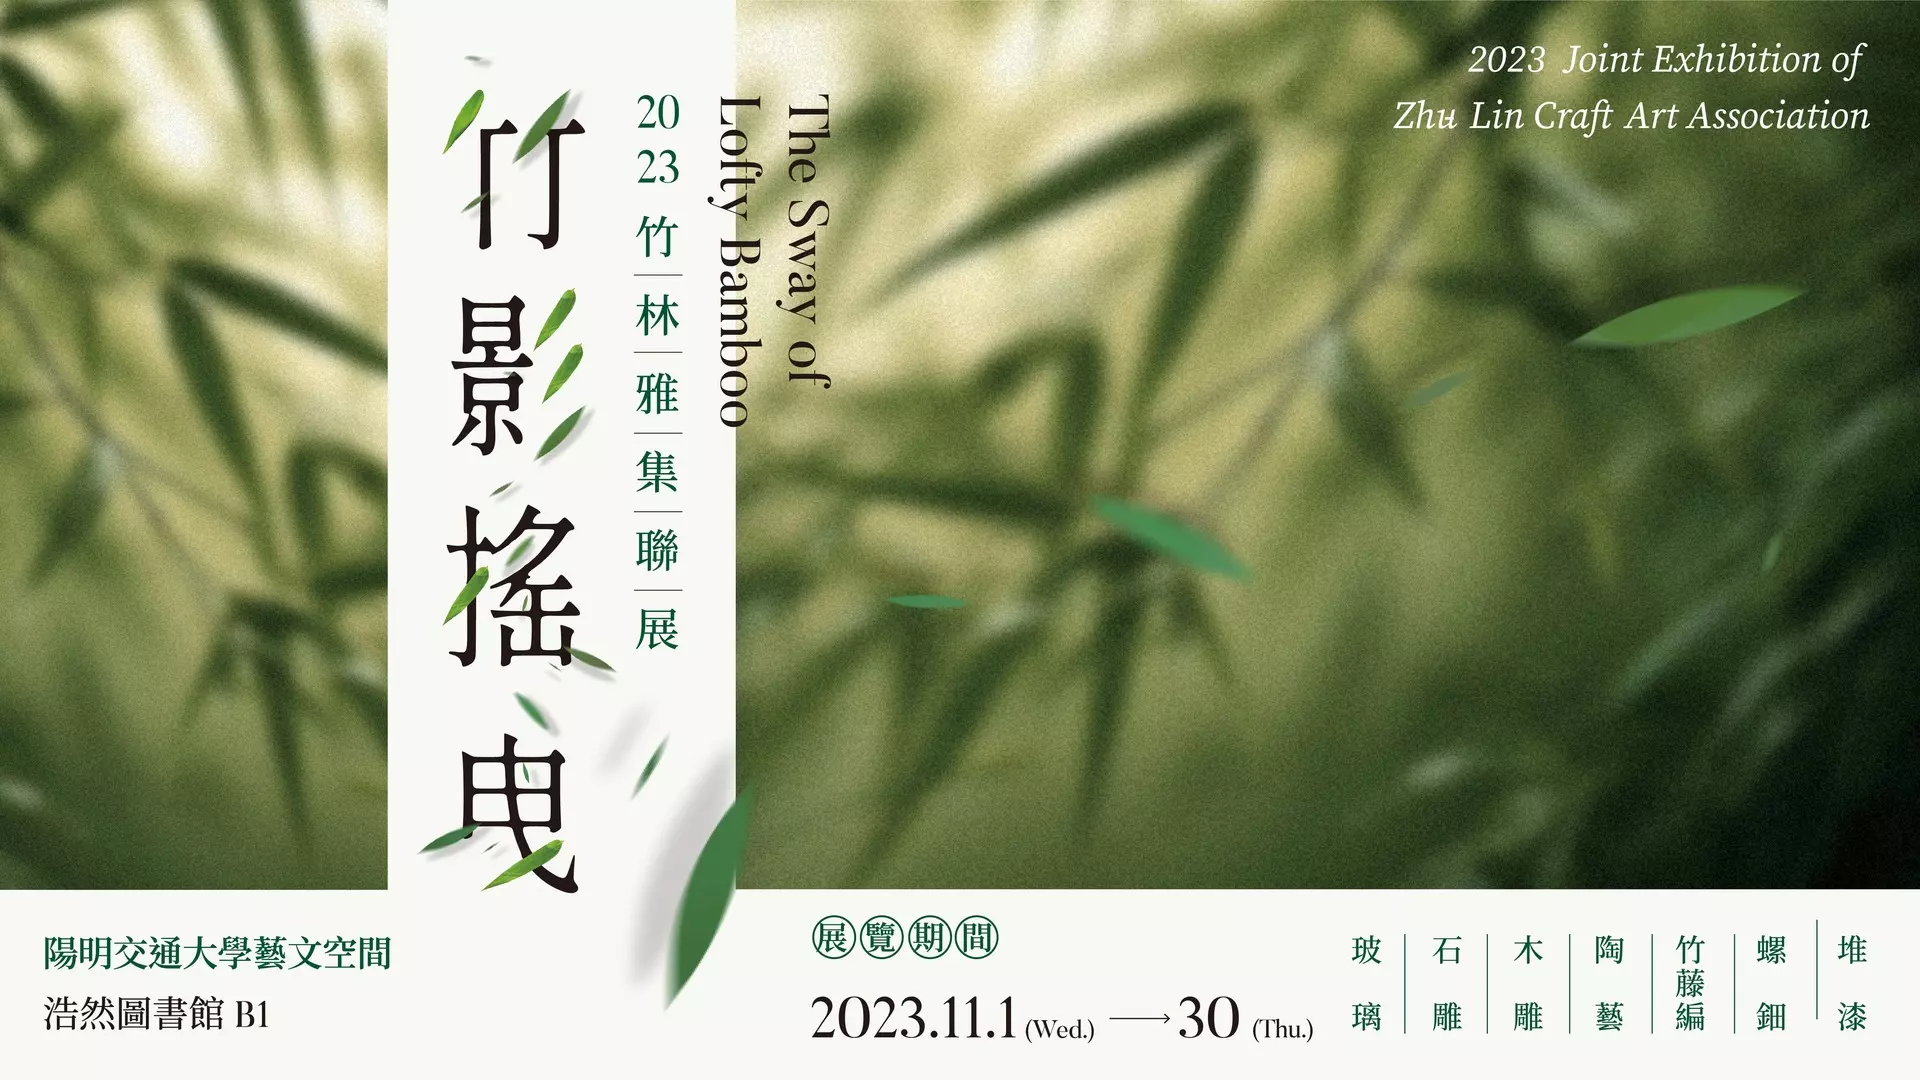 竹影搖曳 - 2023竹林雅集聯展 The Sway of Lofty Bamboo